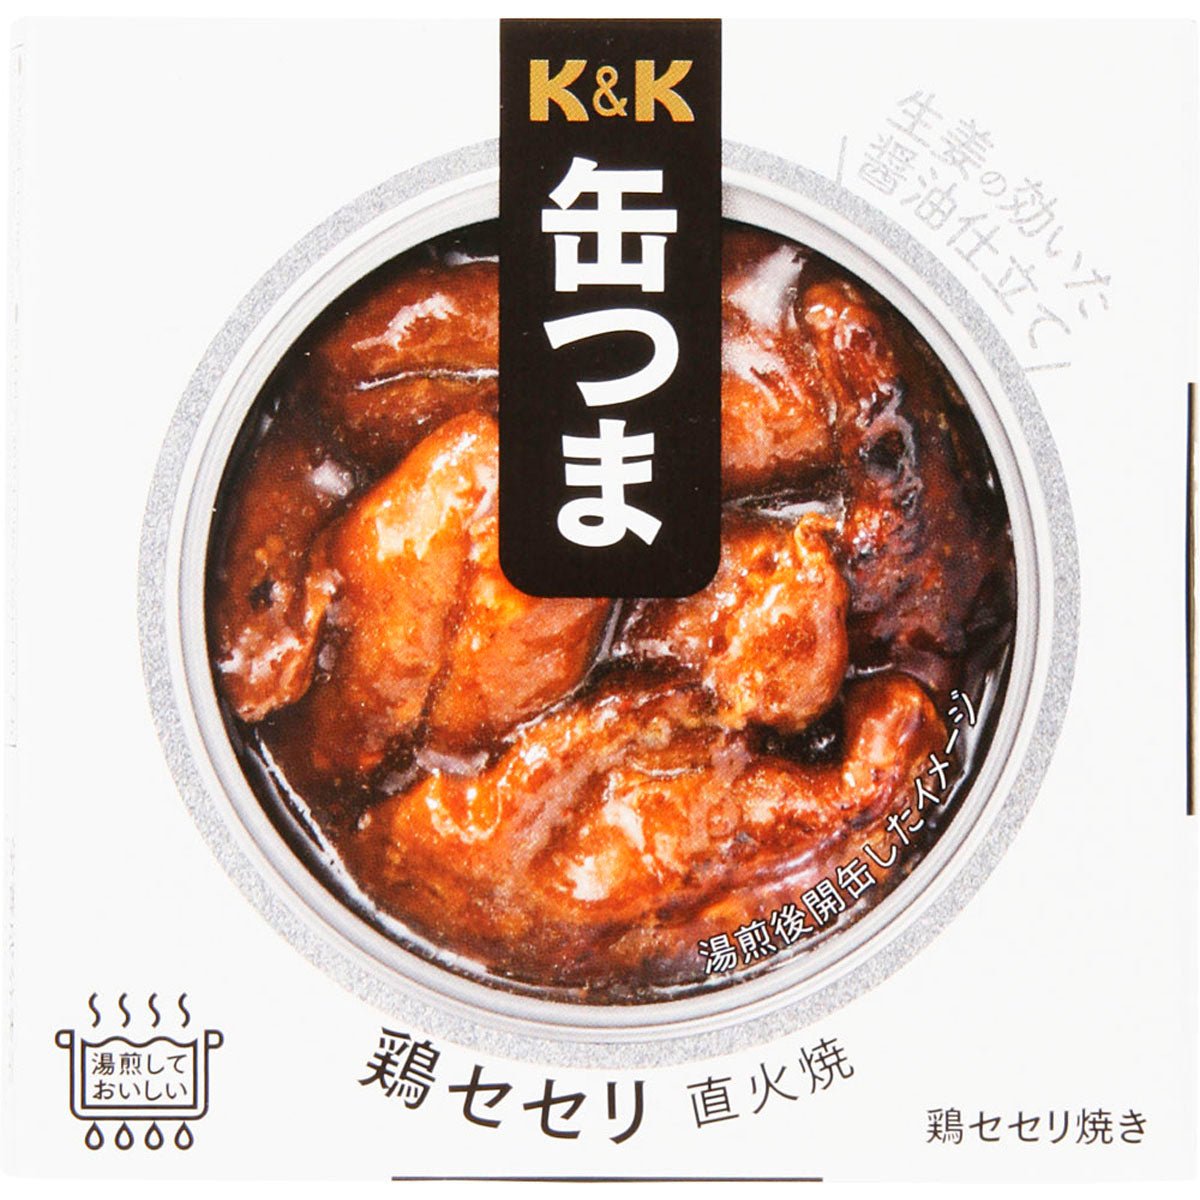 K & K canned egg chicken Seller direct firewaki